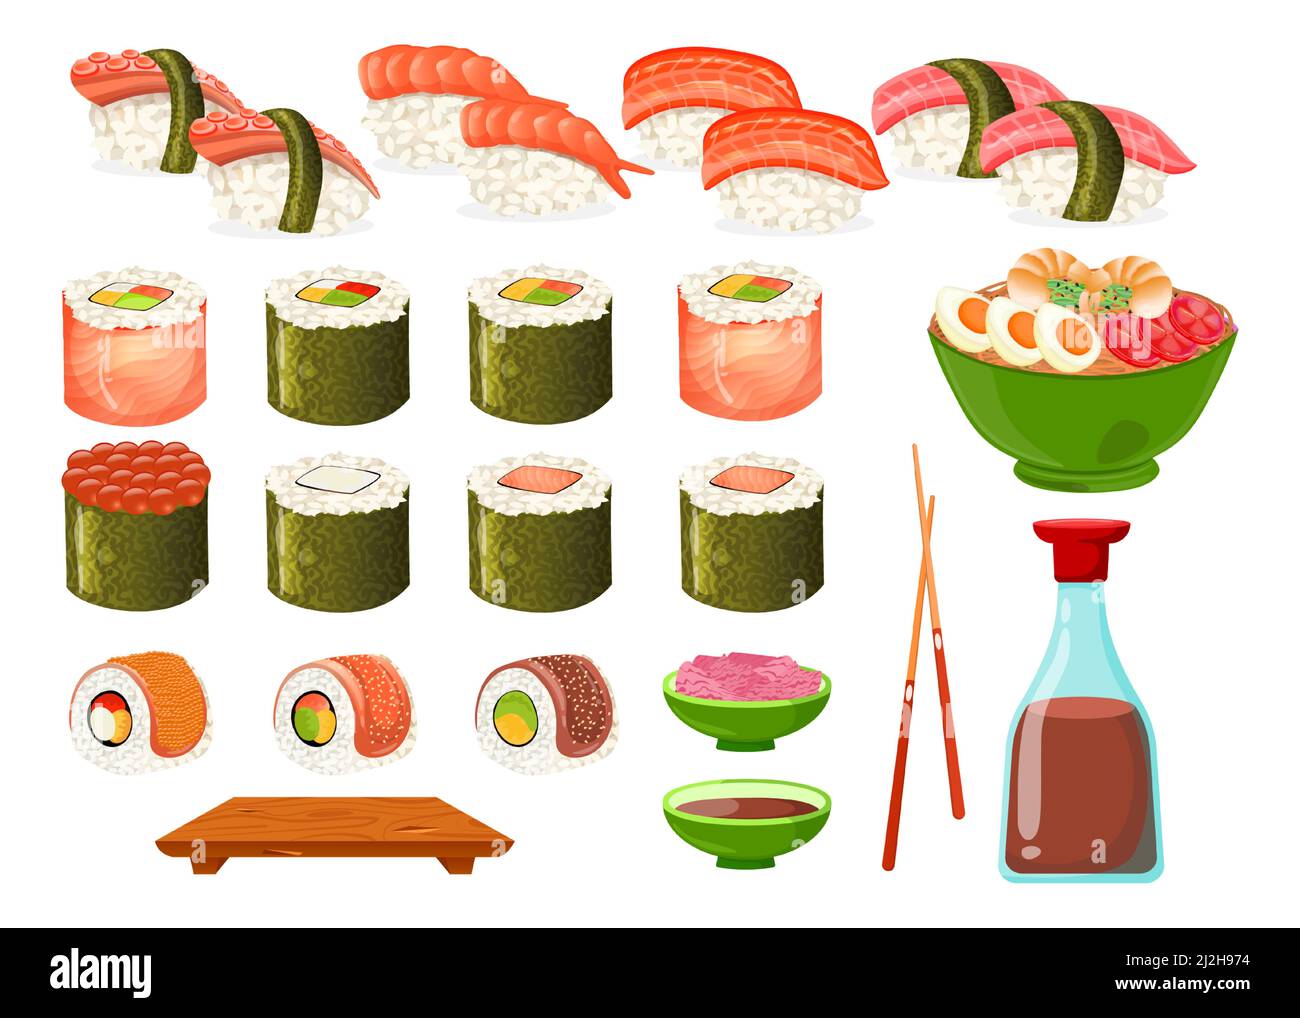 Set von verschiedenen Arten von Sushi und Rollen Cartoon-Illustration. Nigiri, Sojasauce, Essstäbchen, Sashimi, Uramaki, gunkan Sushi mit Aal, Ikura, Nudel Stock Vektor